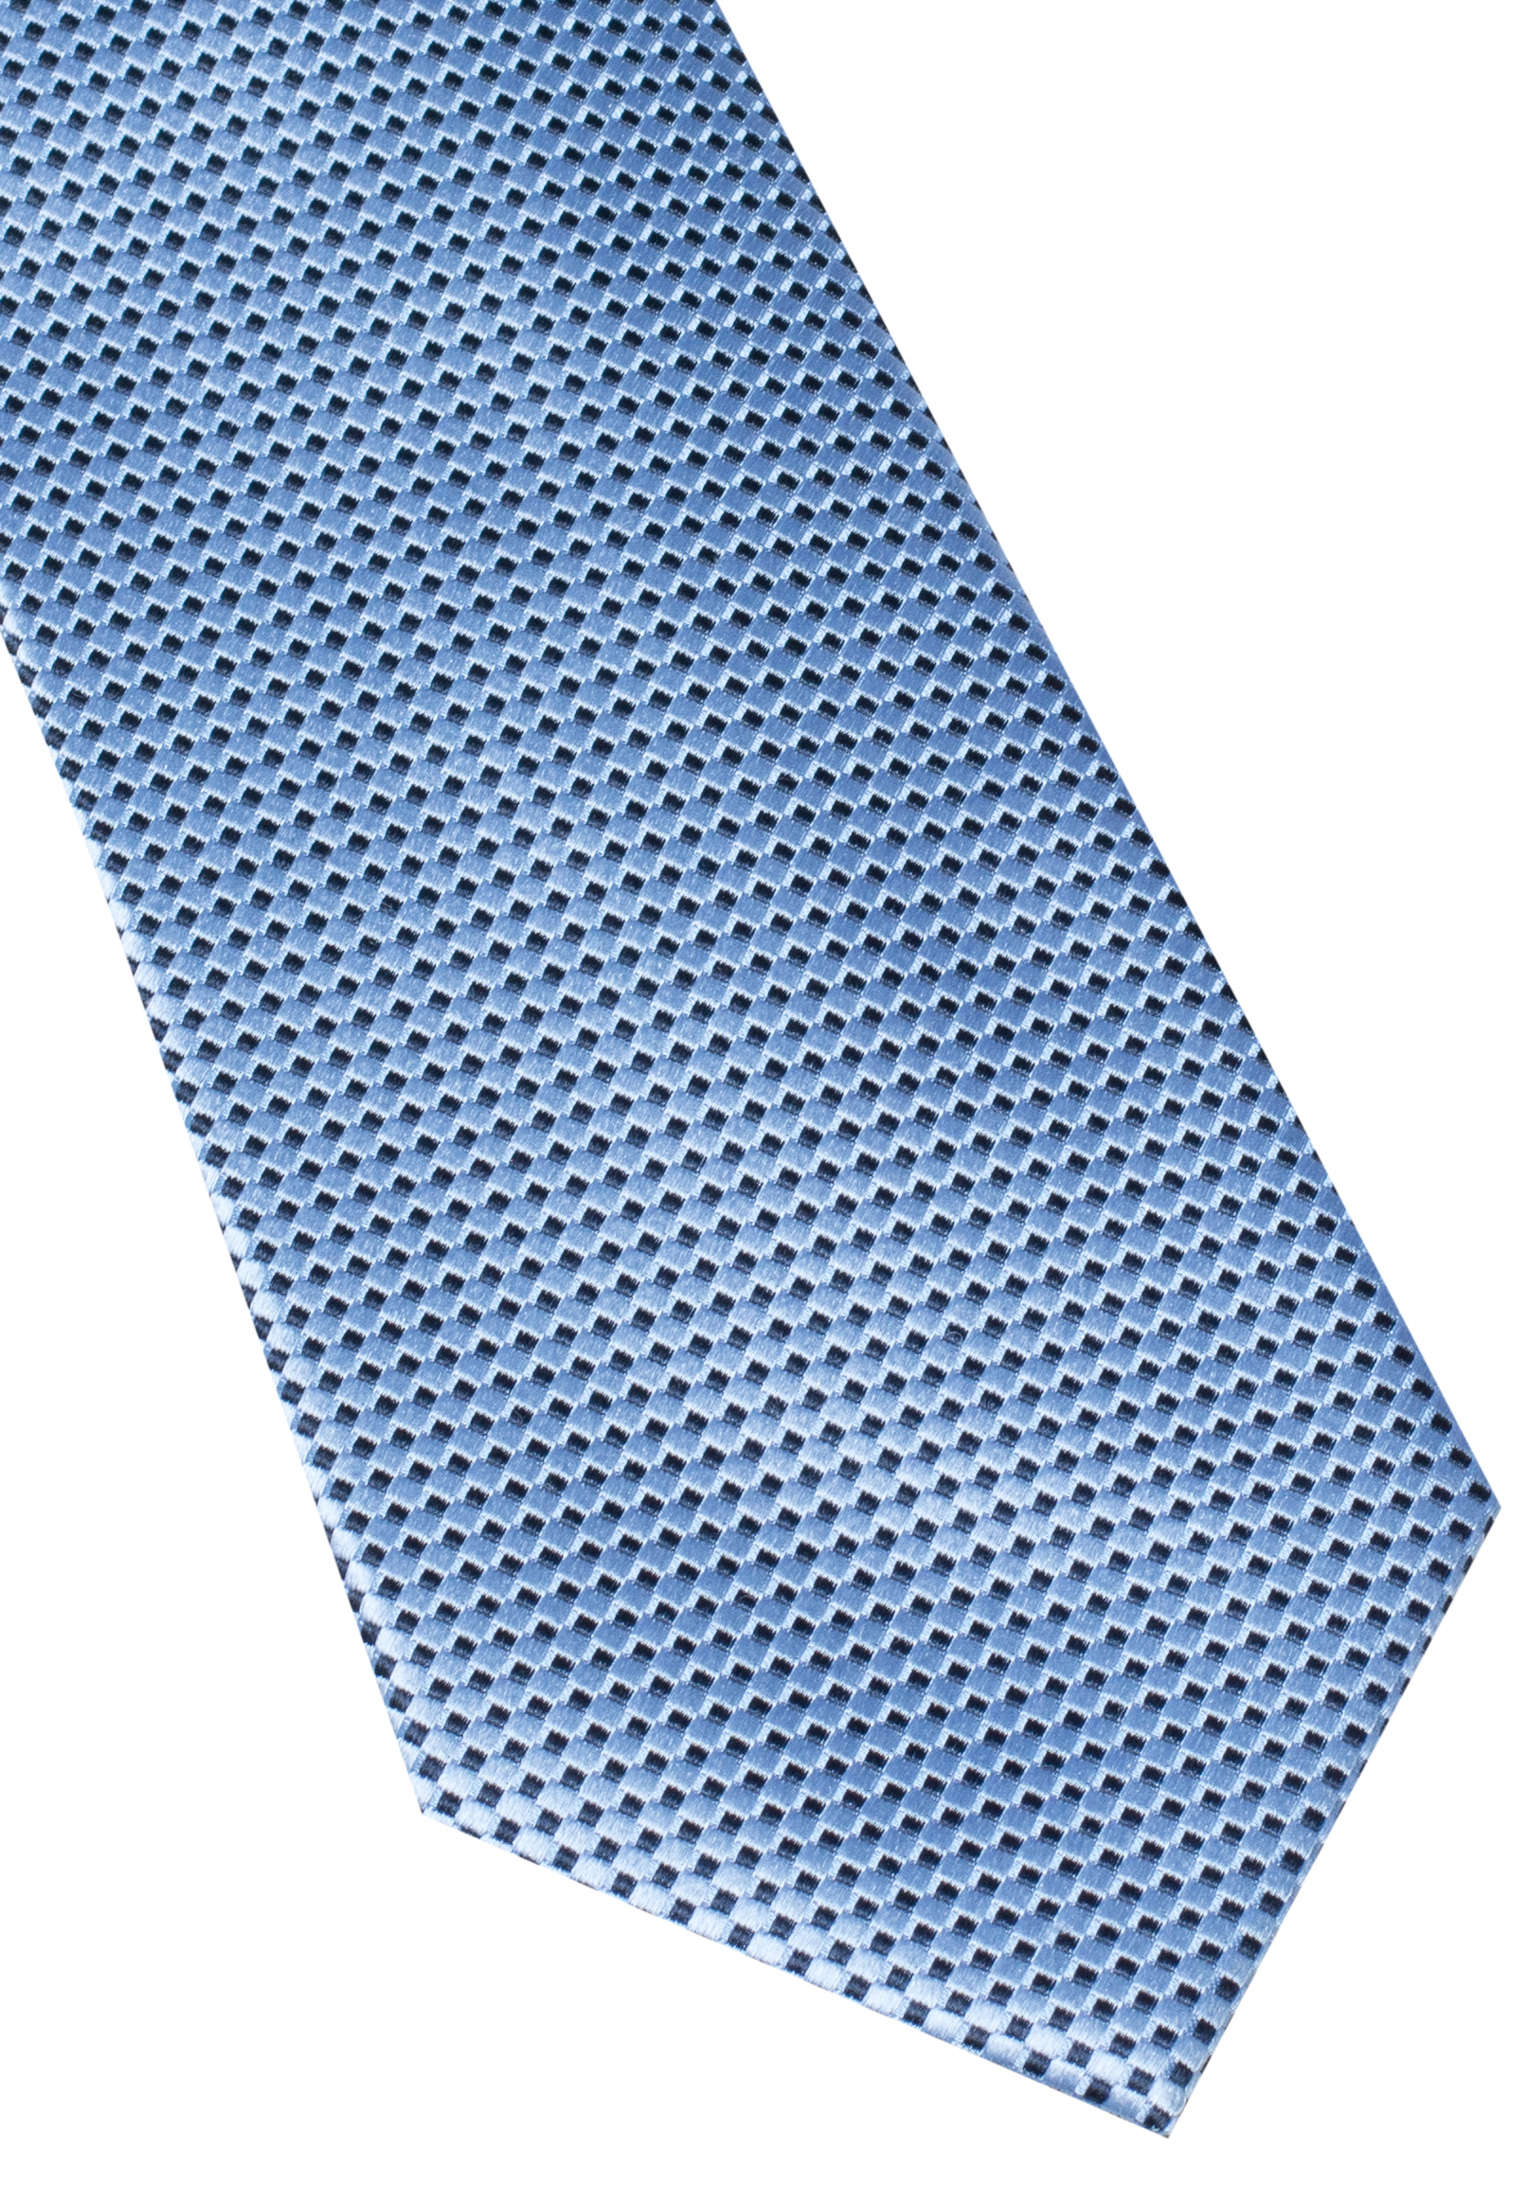 Cravate bleu clair structuré